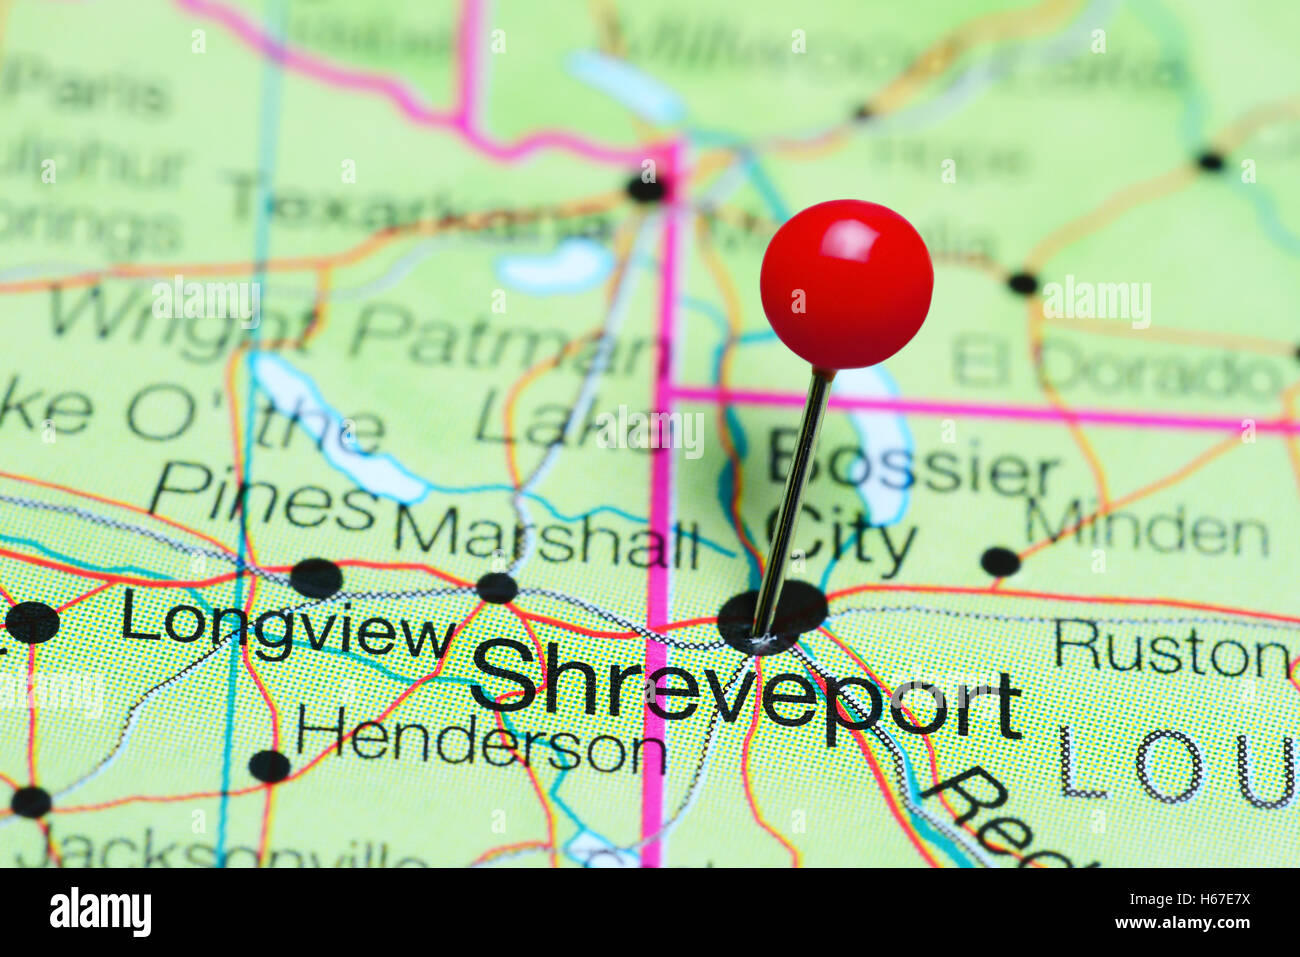 Shreveport pinned on a map of Louisiana, USA Stock Photo